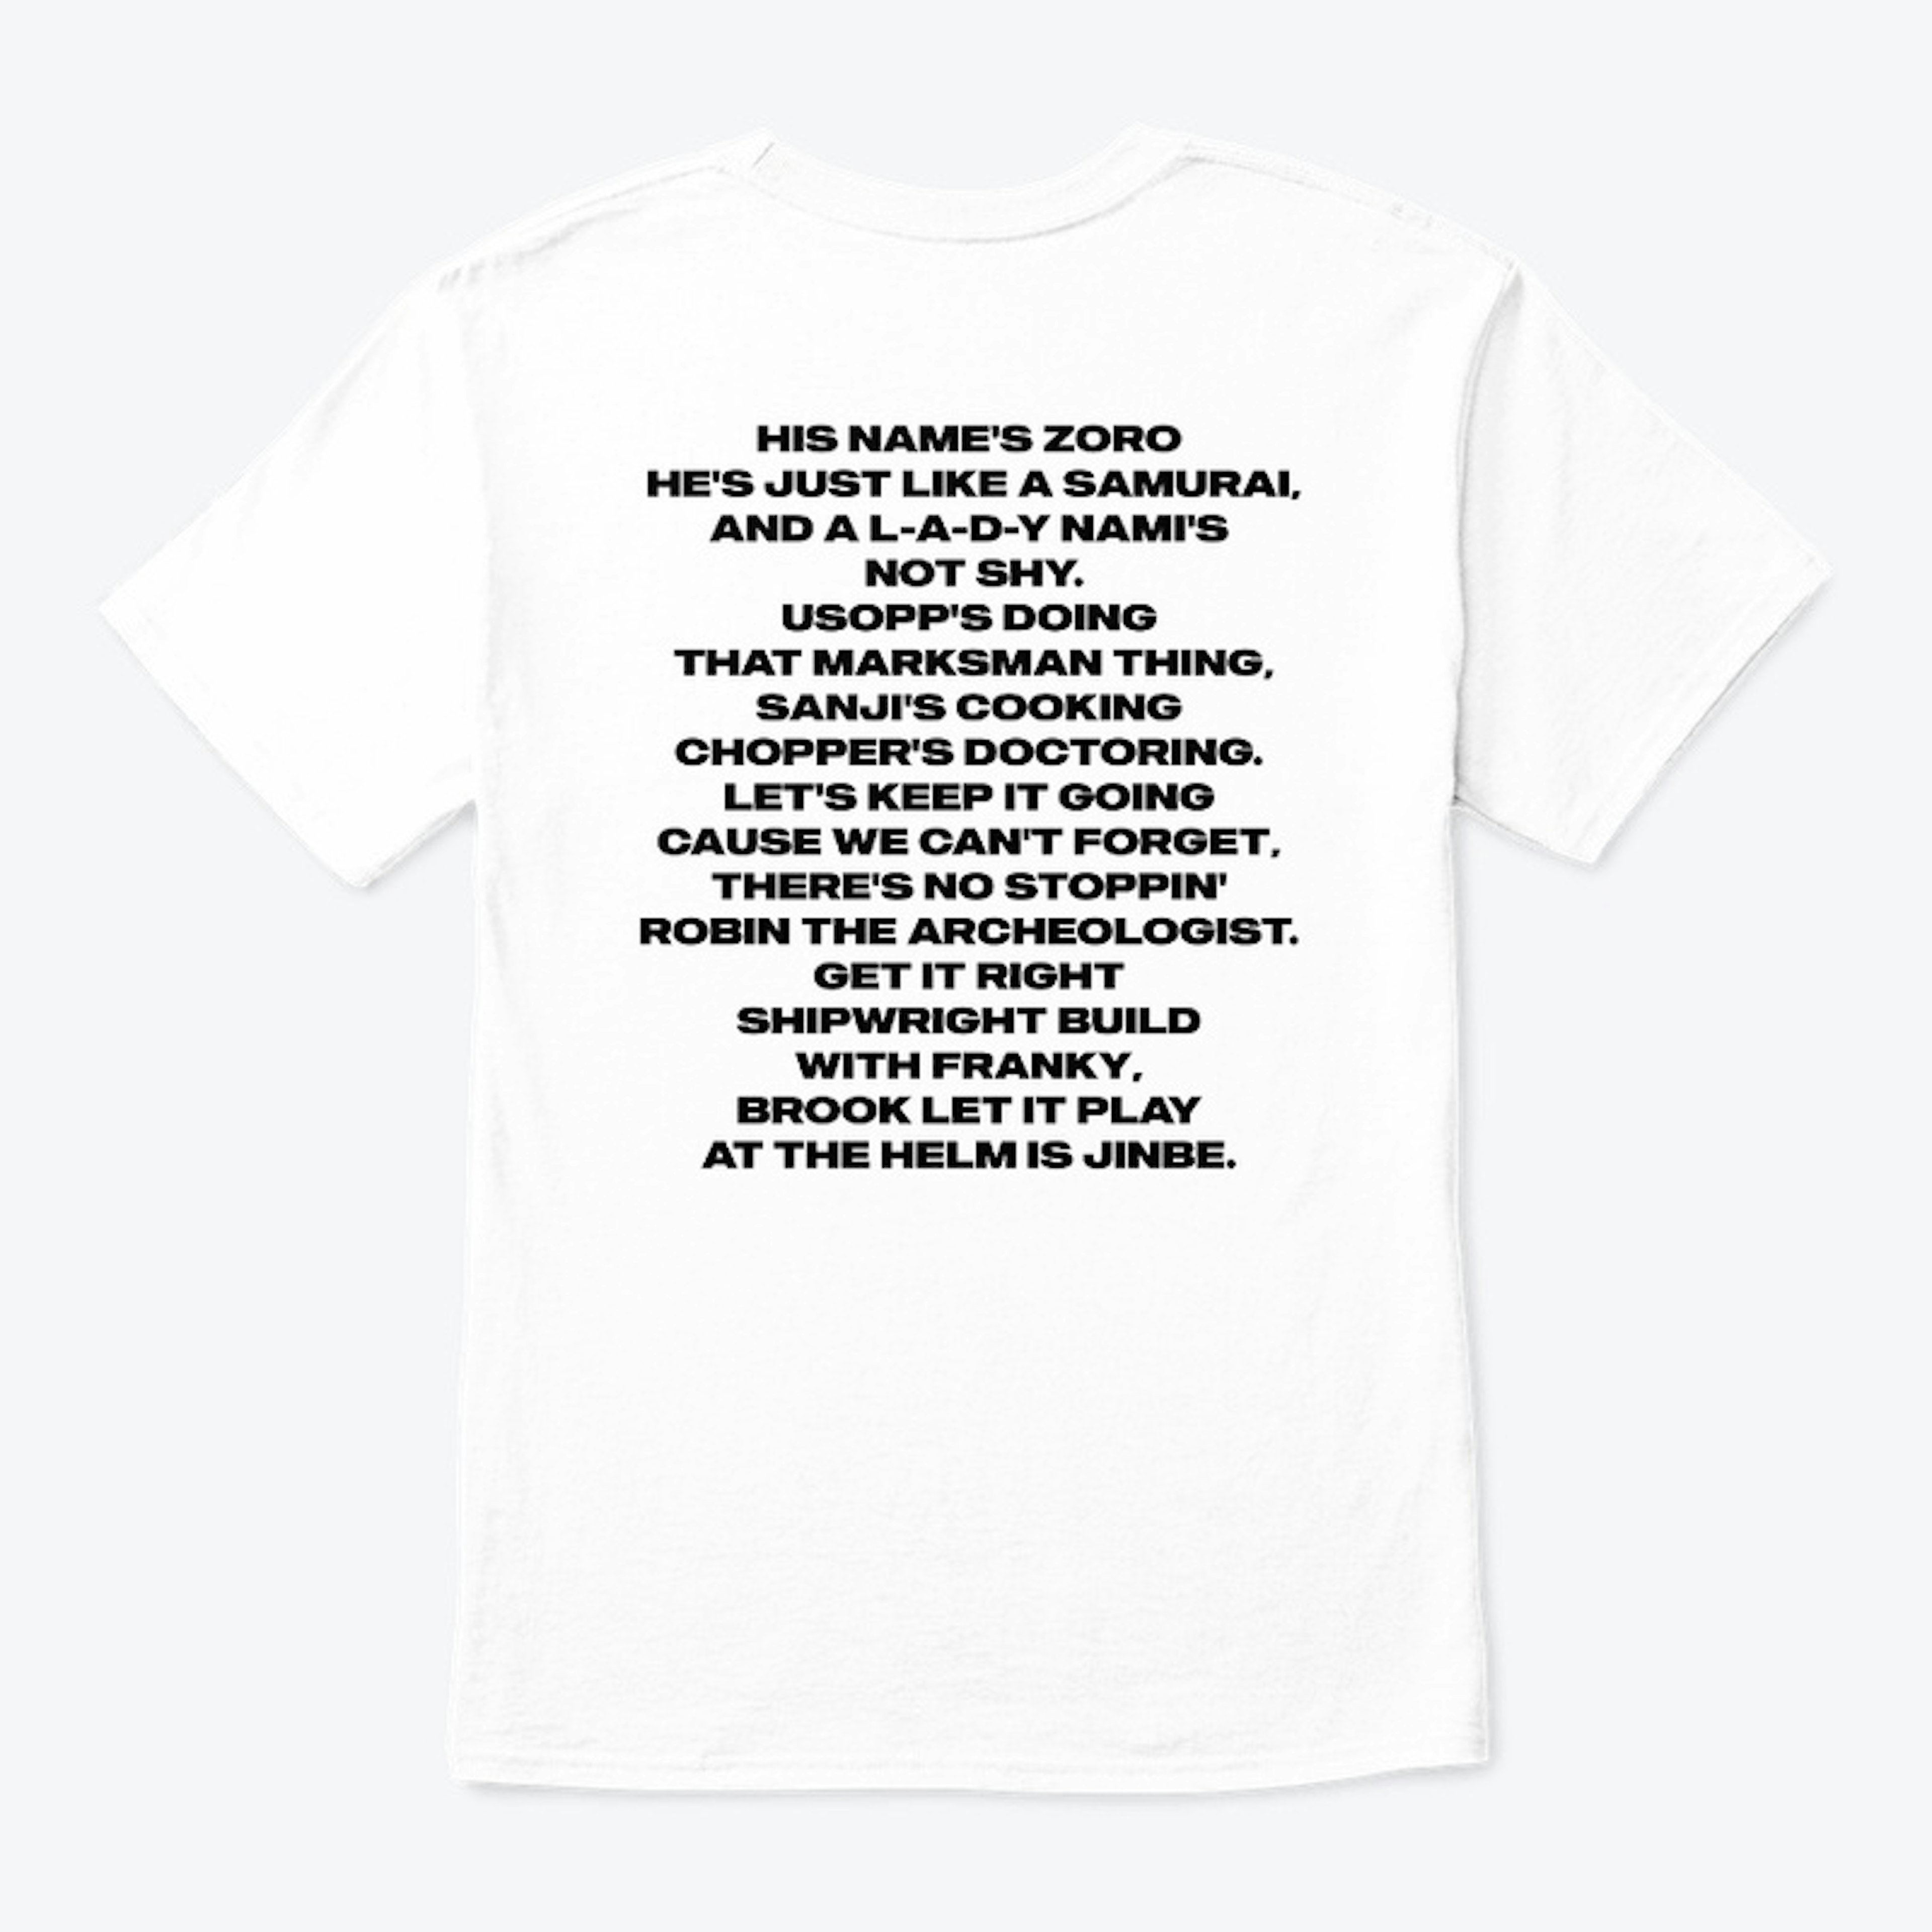 YA YO part 2 Lyrics T-shirt